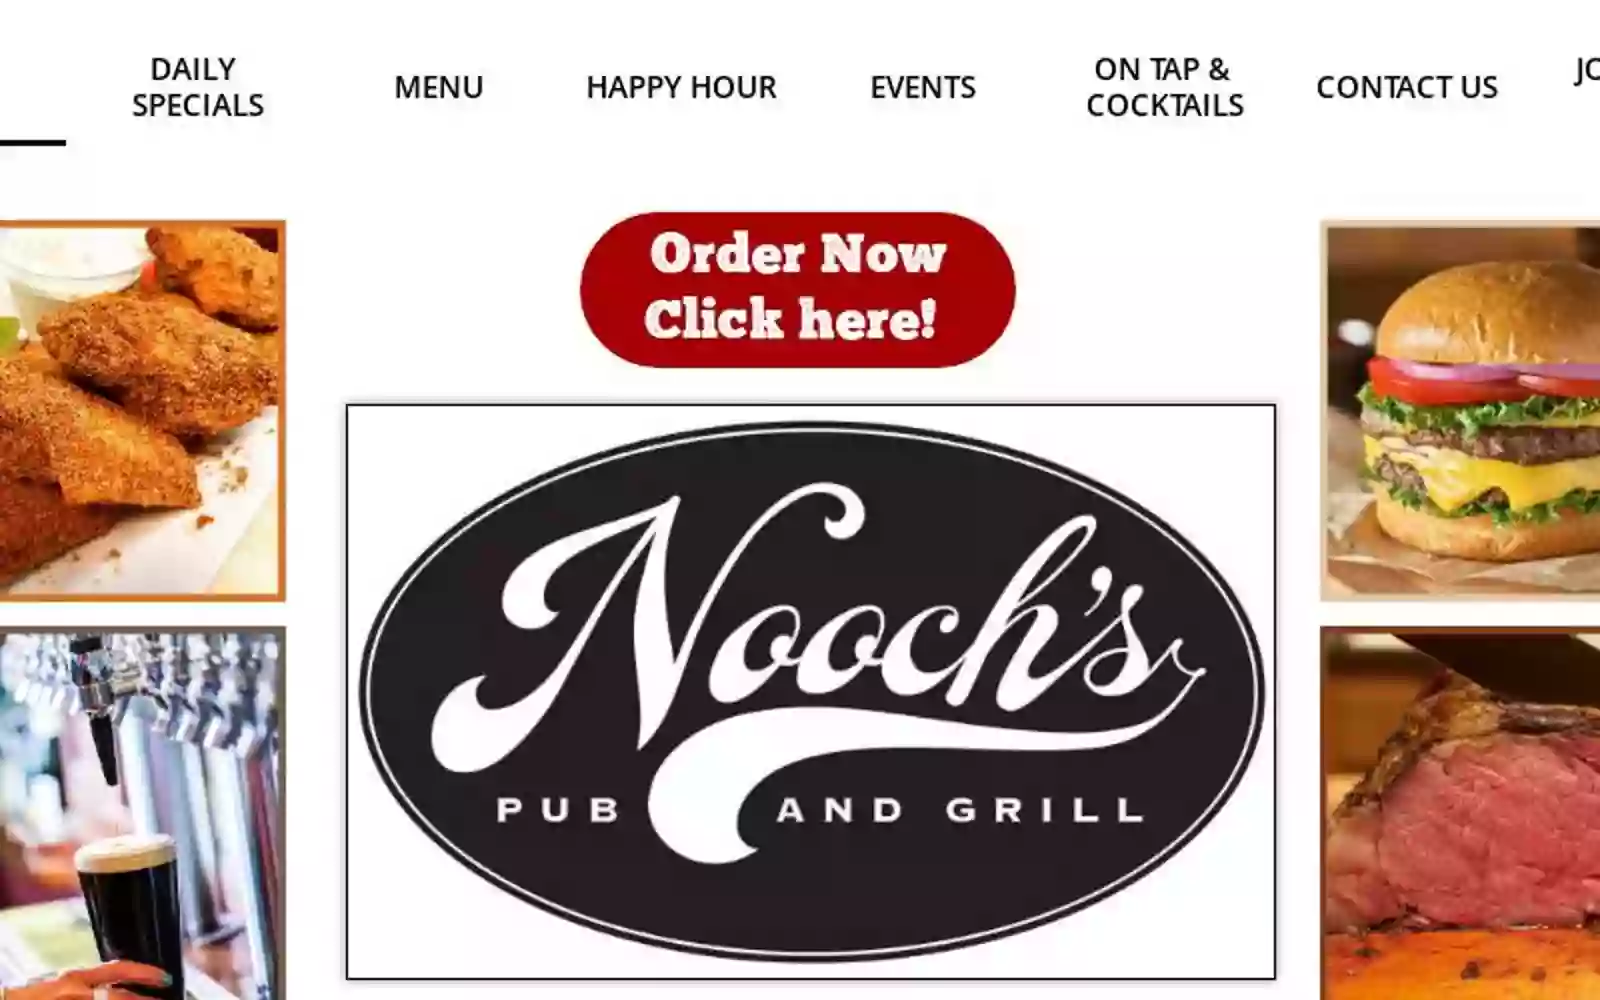 Nooch's Pub & Grill